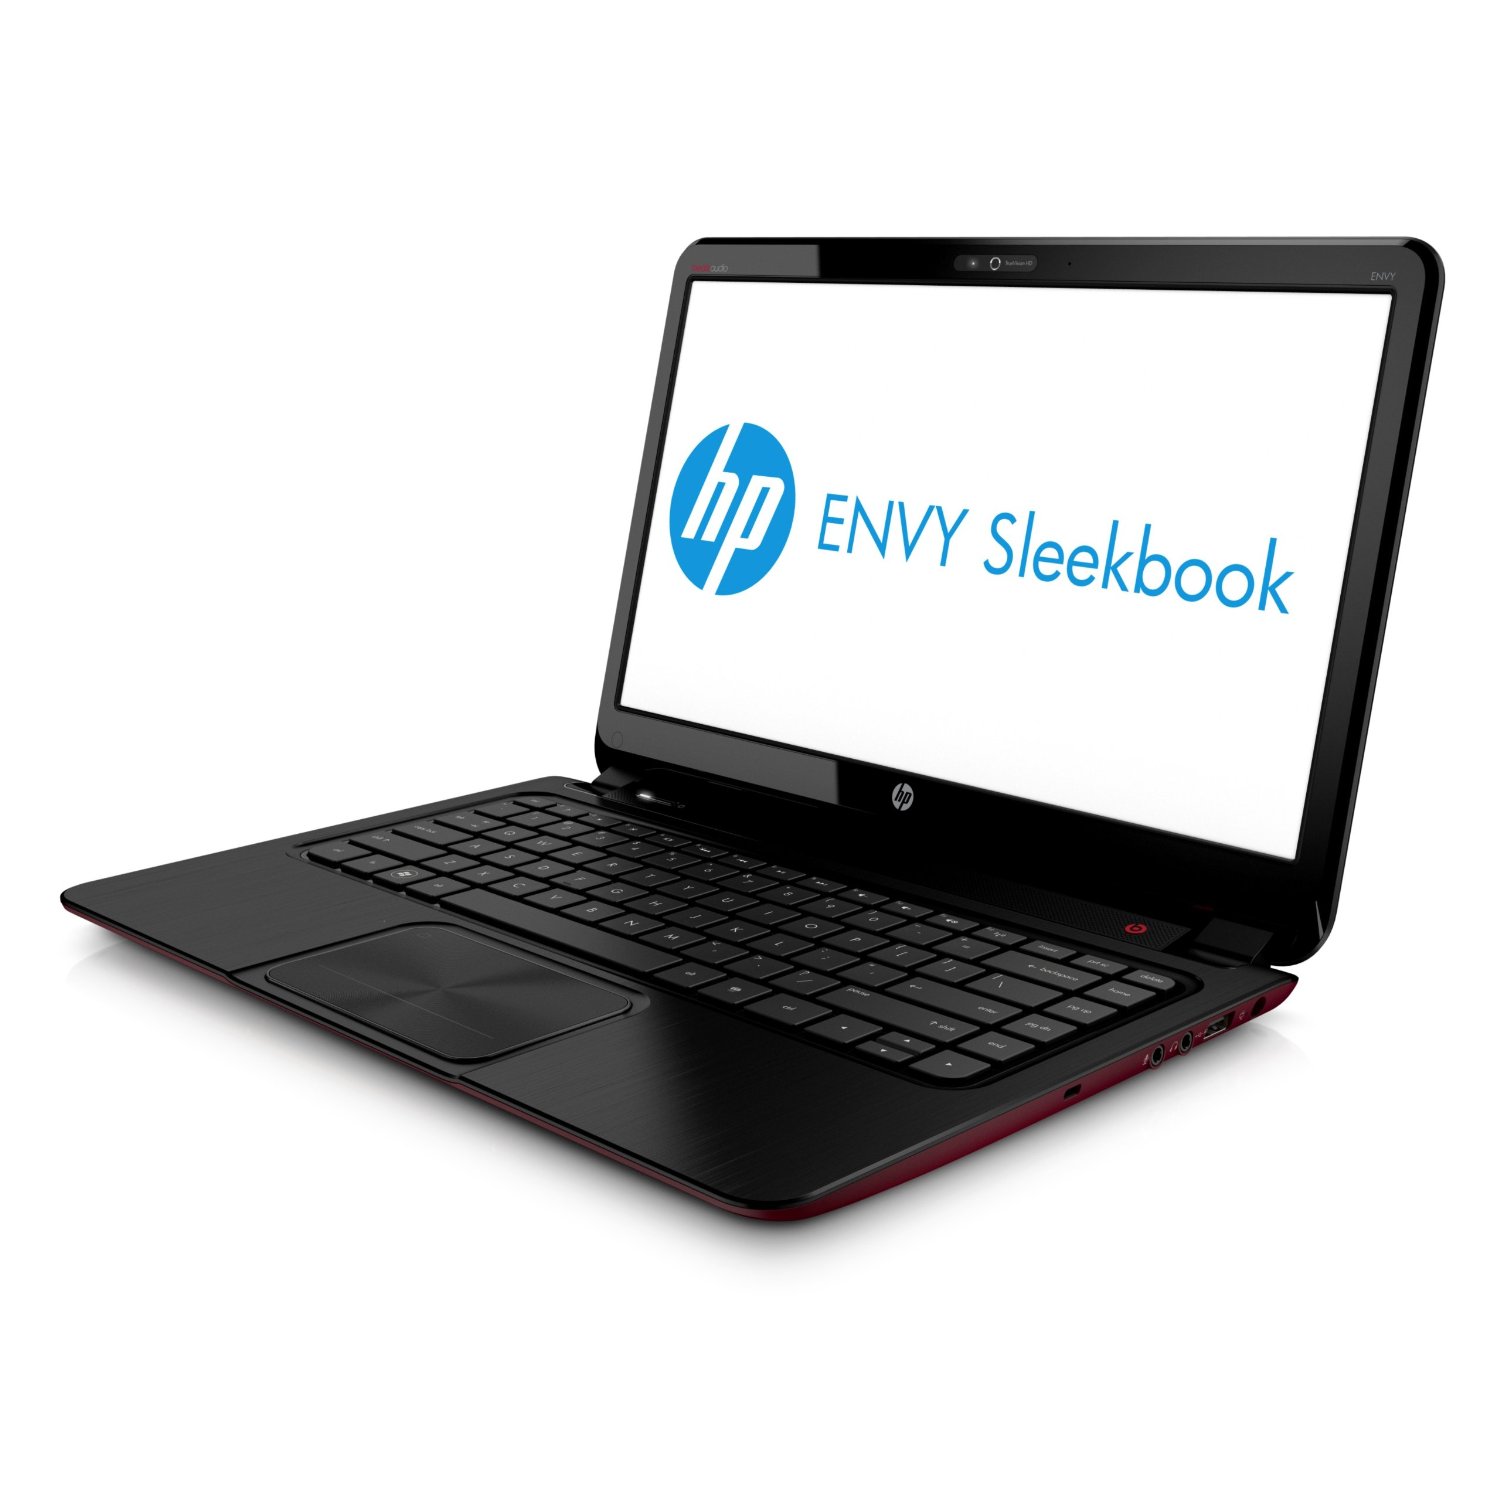 HP Envy 6-1110US Sleekbook Review